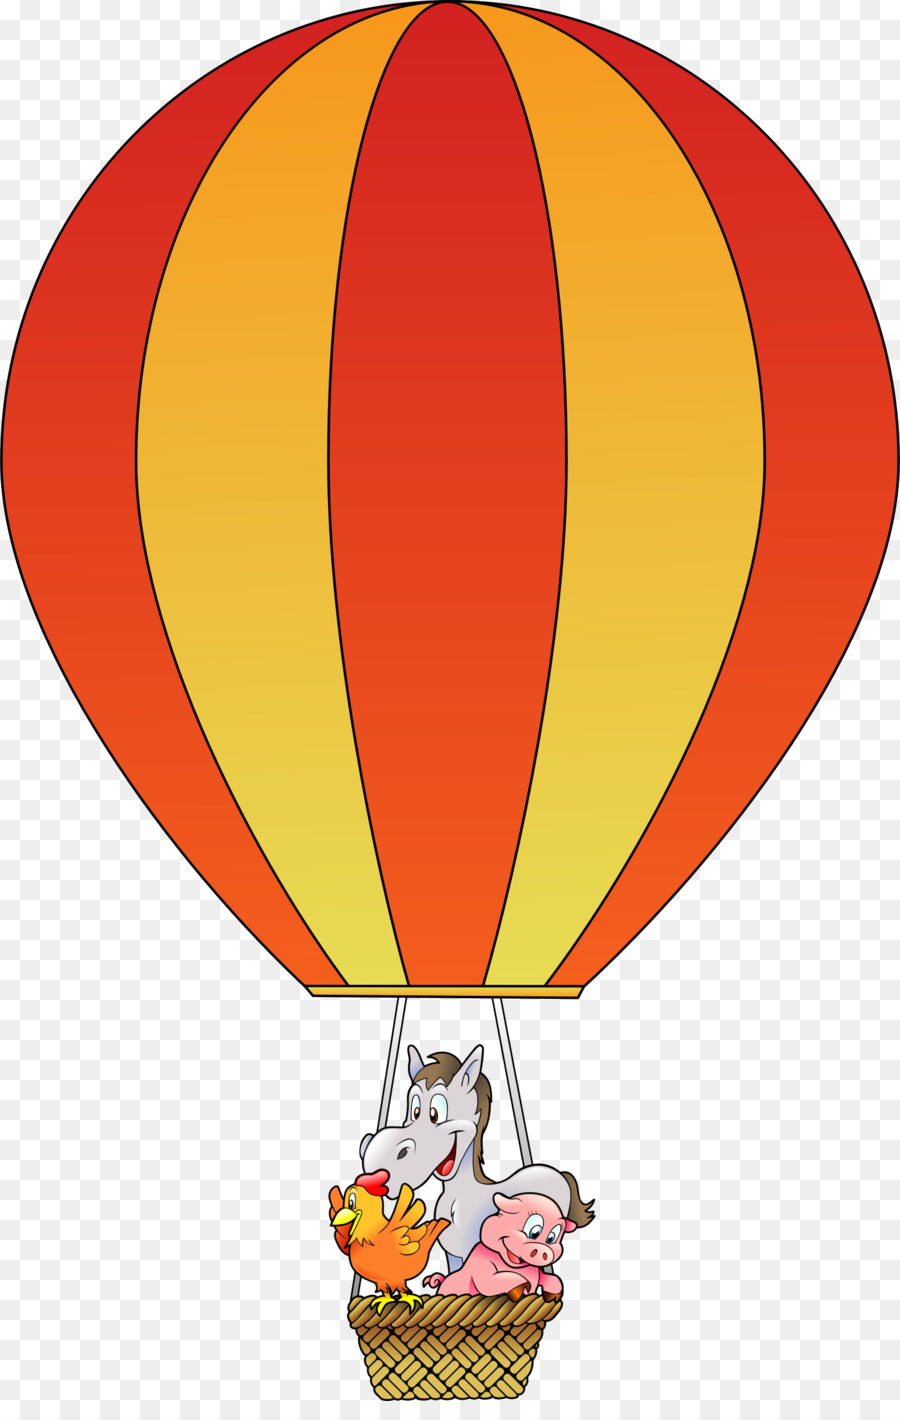 Hot Air Balloon Cartoon png download - 1542*2400 - Free Transparent Hot Air  Balloon png Download. - CleanPNG / KissPNG